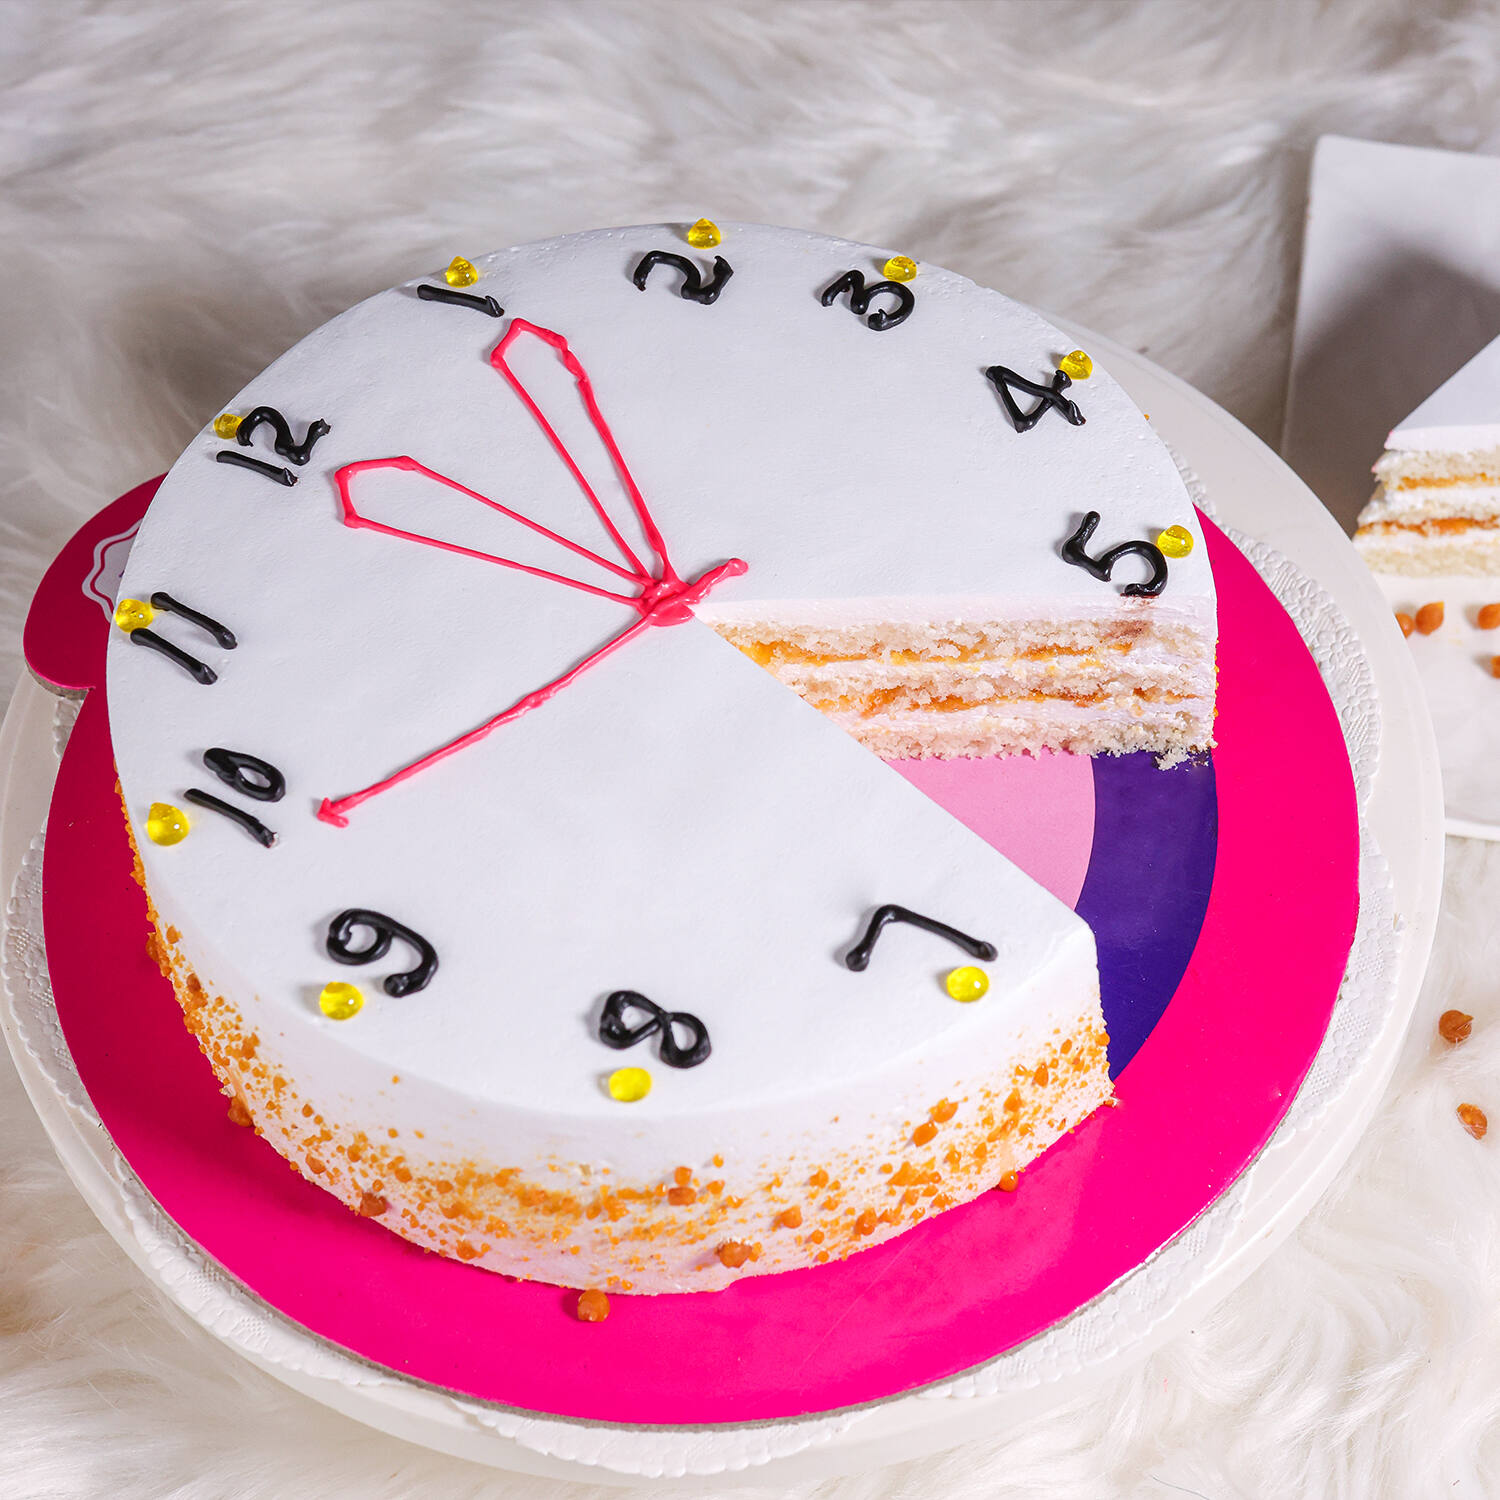 Spilled Clock Retirement Party Cake — Trefzger's Bakery